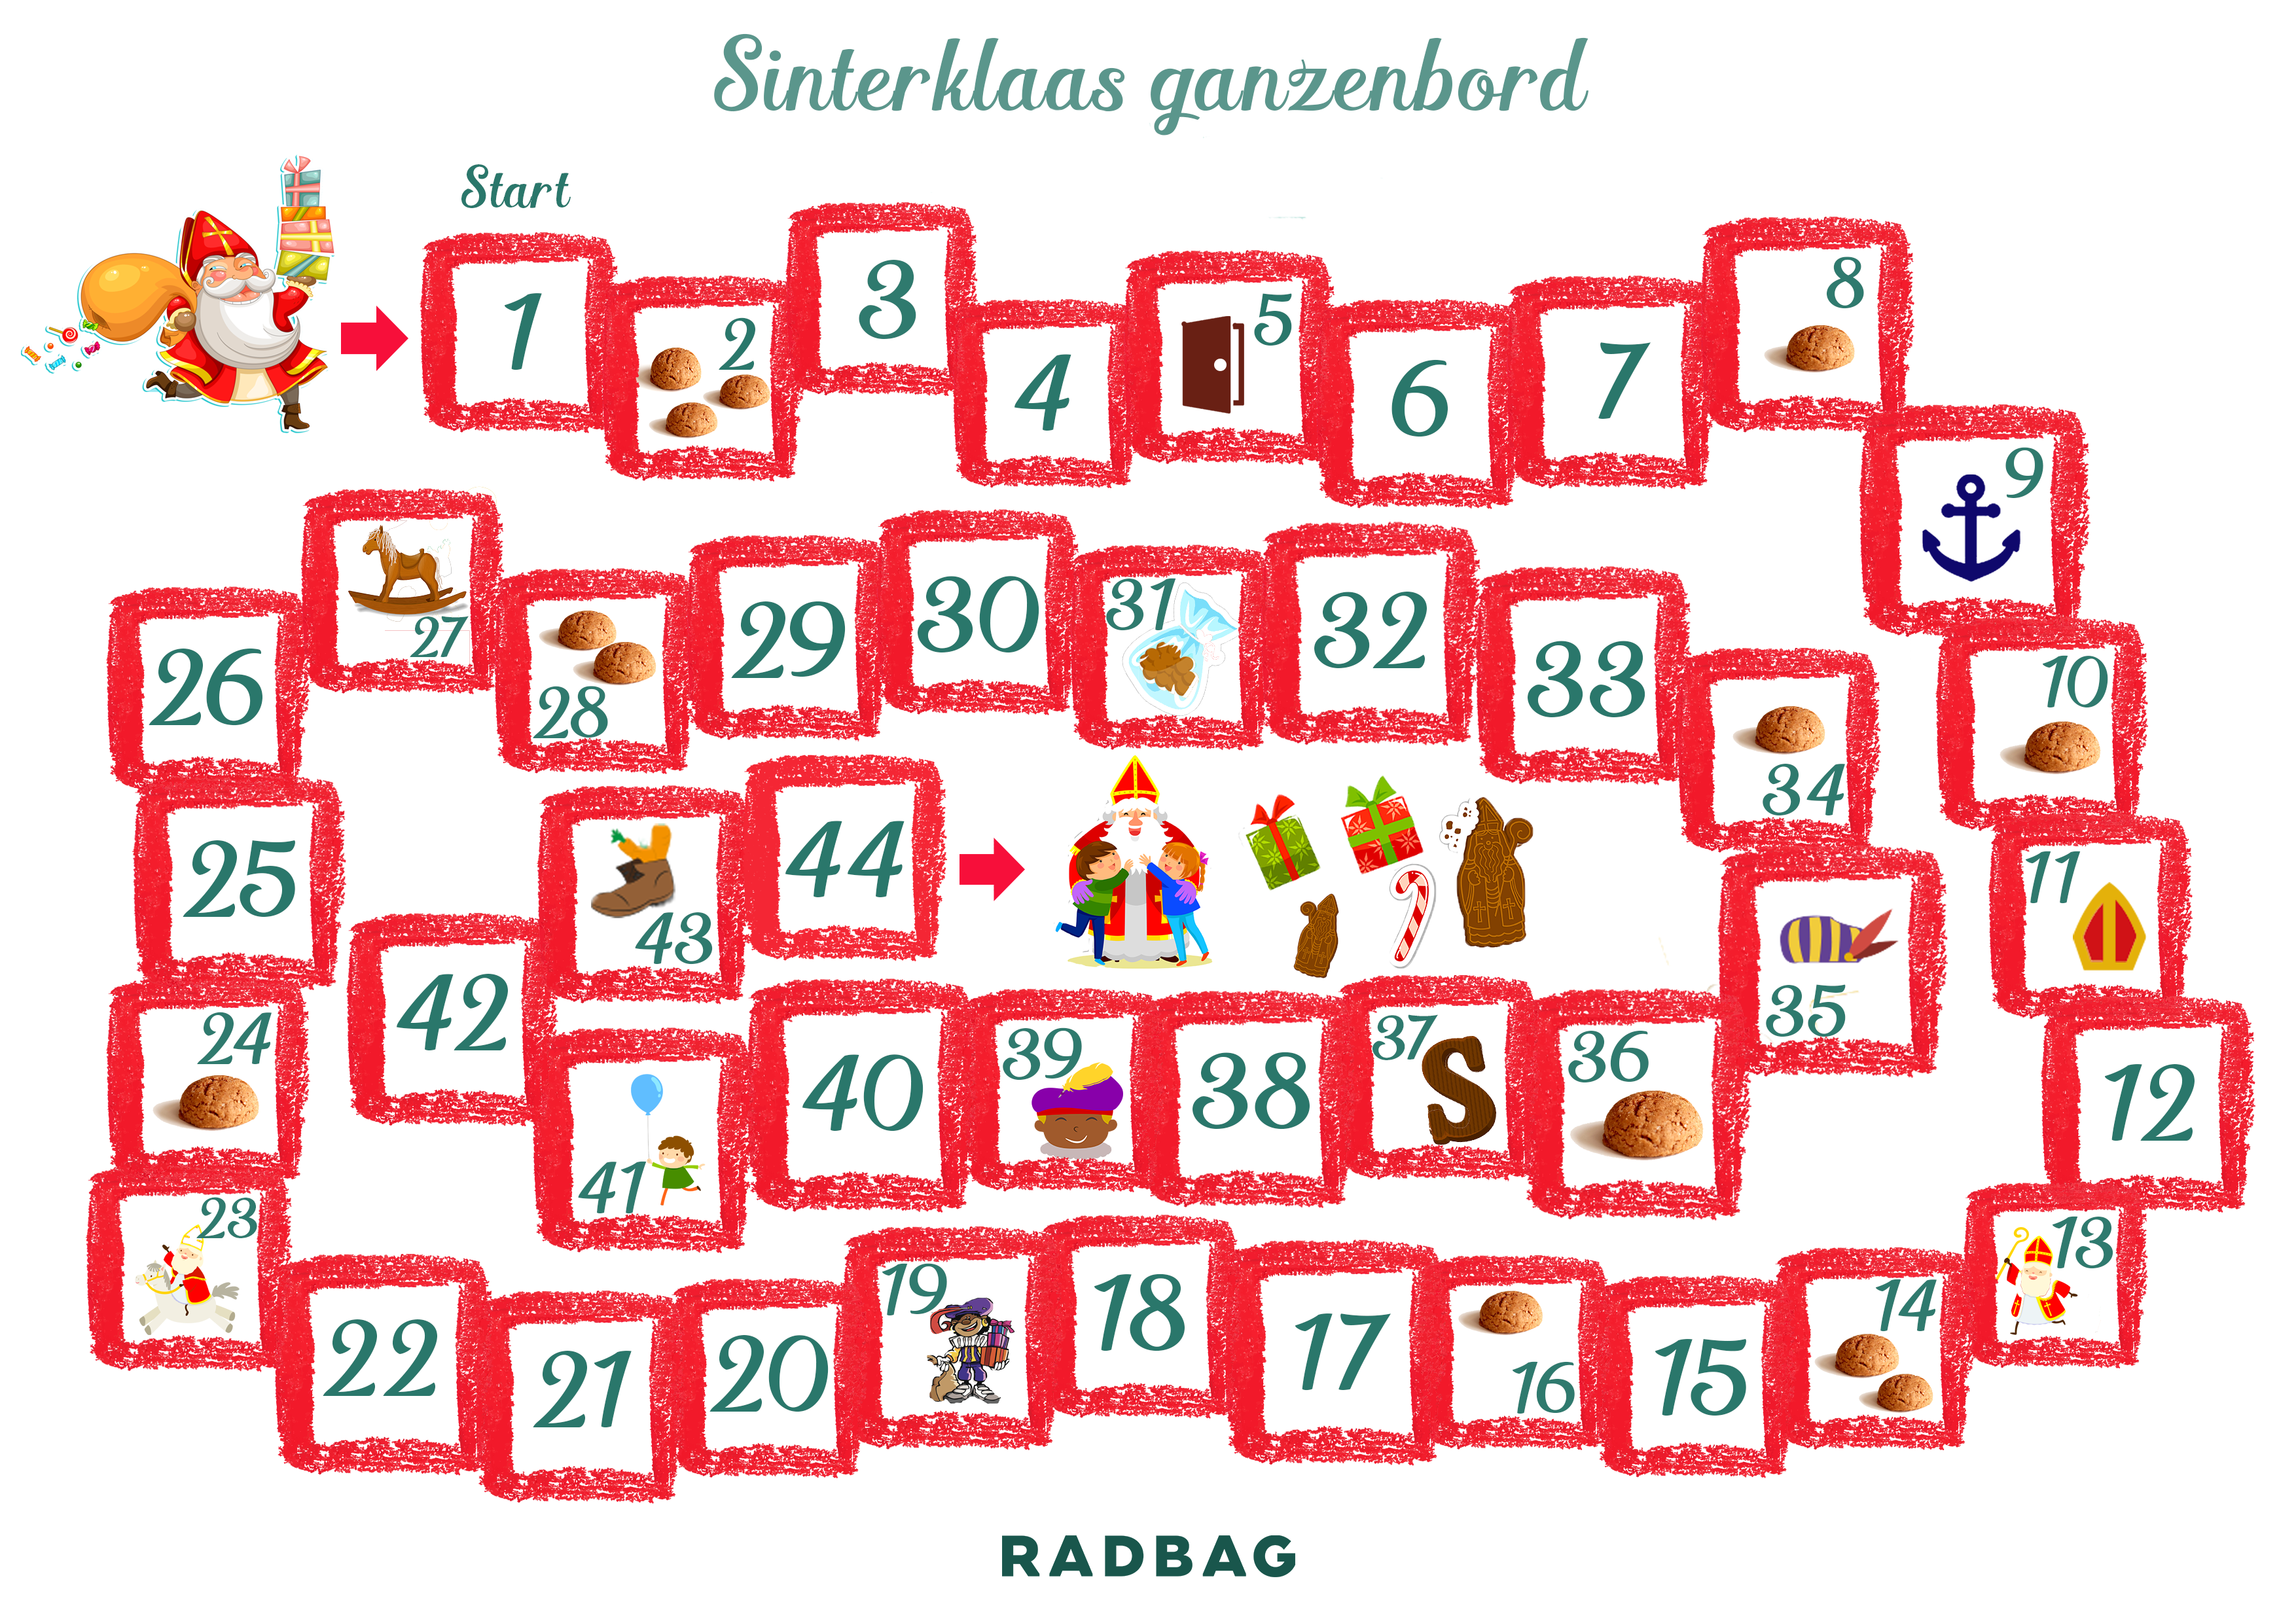 Minimaal gemakkelijk te kwetsen hoofdpijn Het leukste Sinterklaas spel ganzenbord | Gratis printen